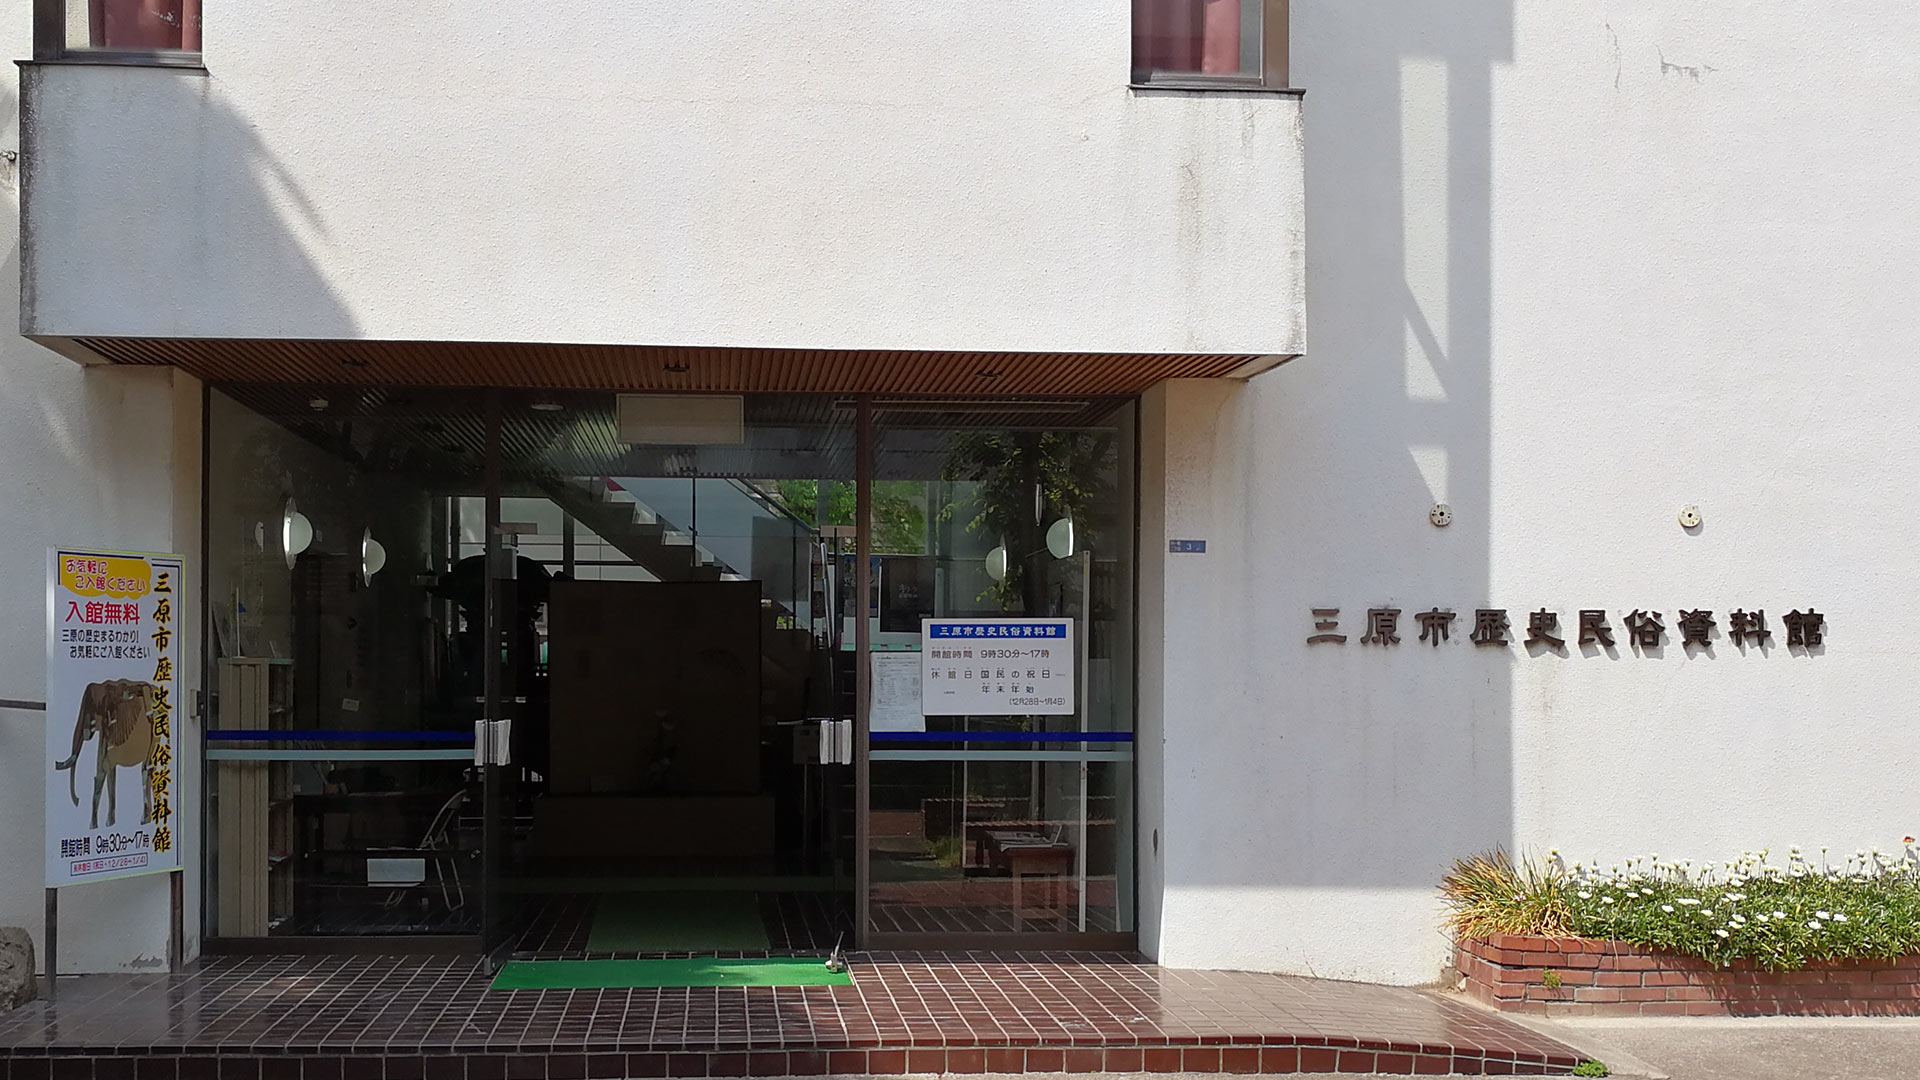 三原市歴史民俗資料館（みはらしくいれきしみんぞくしりょうかん） History and Folklore Museum Mihara City